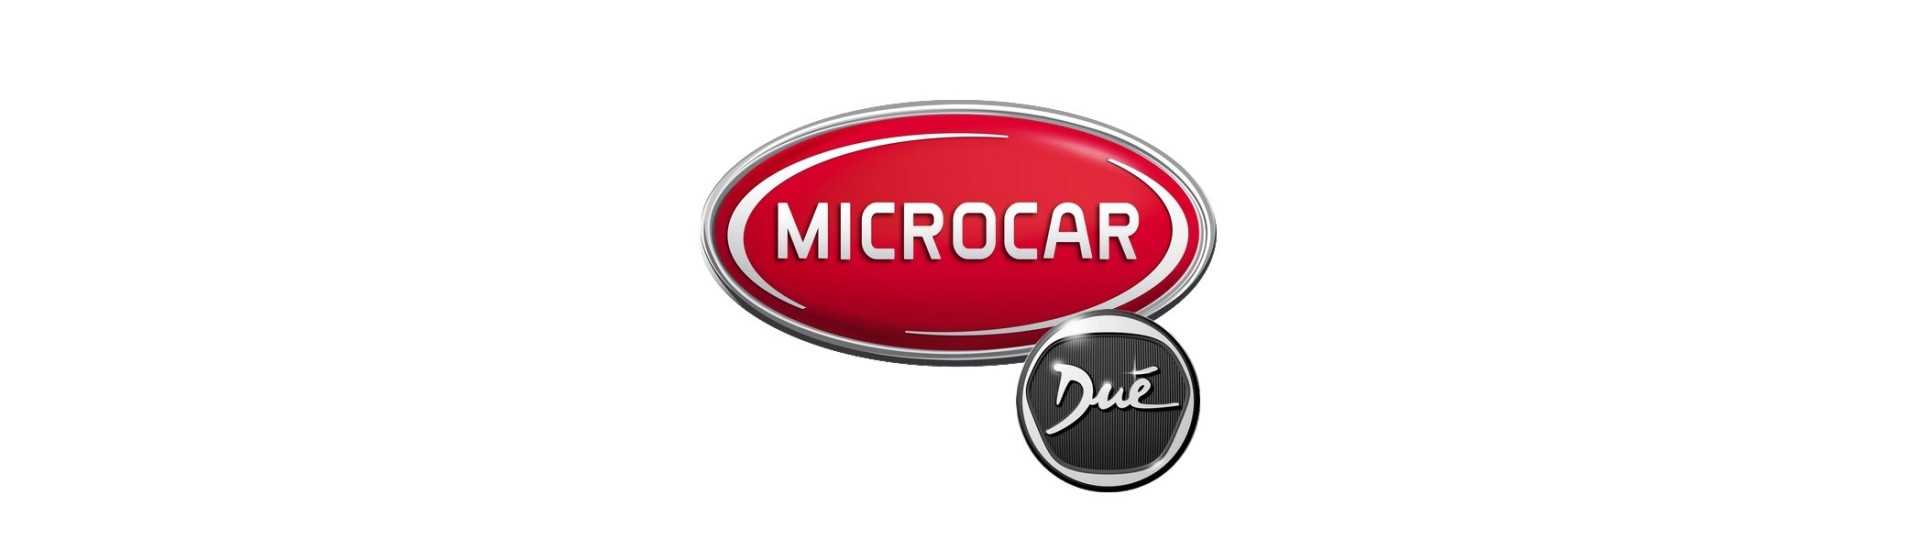 Ulkoinen ovi hoitaa parhaan auton hinnan ilman lisenssiä Microcar